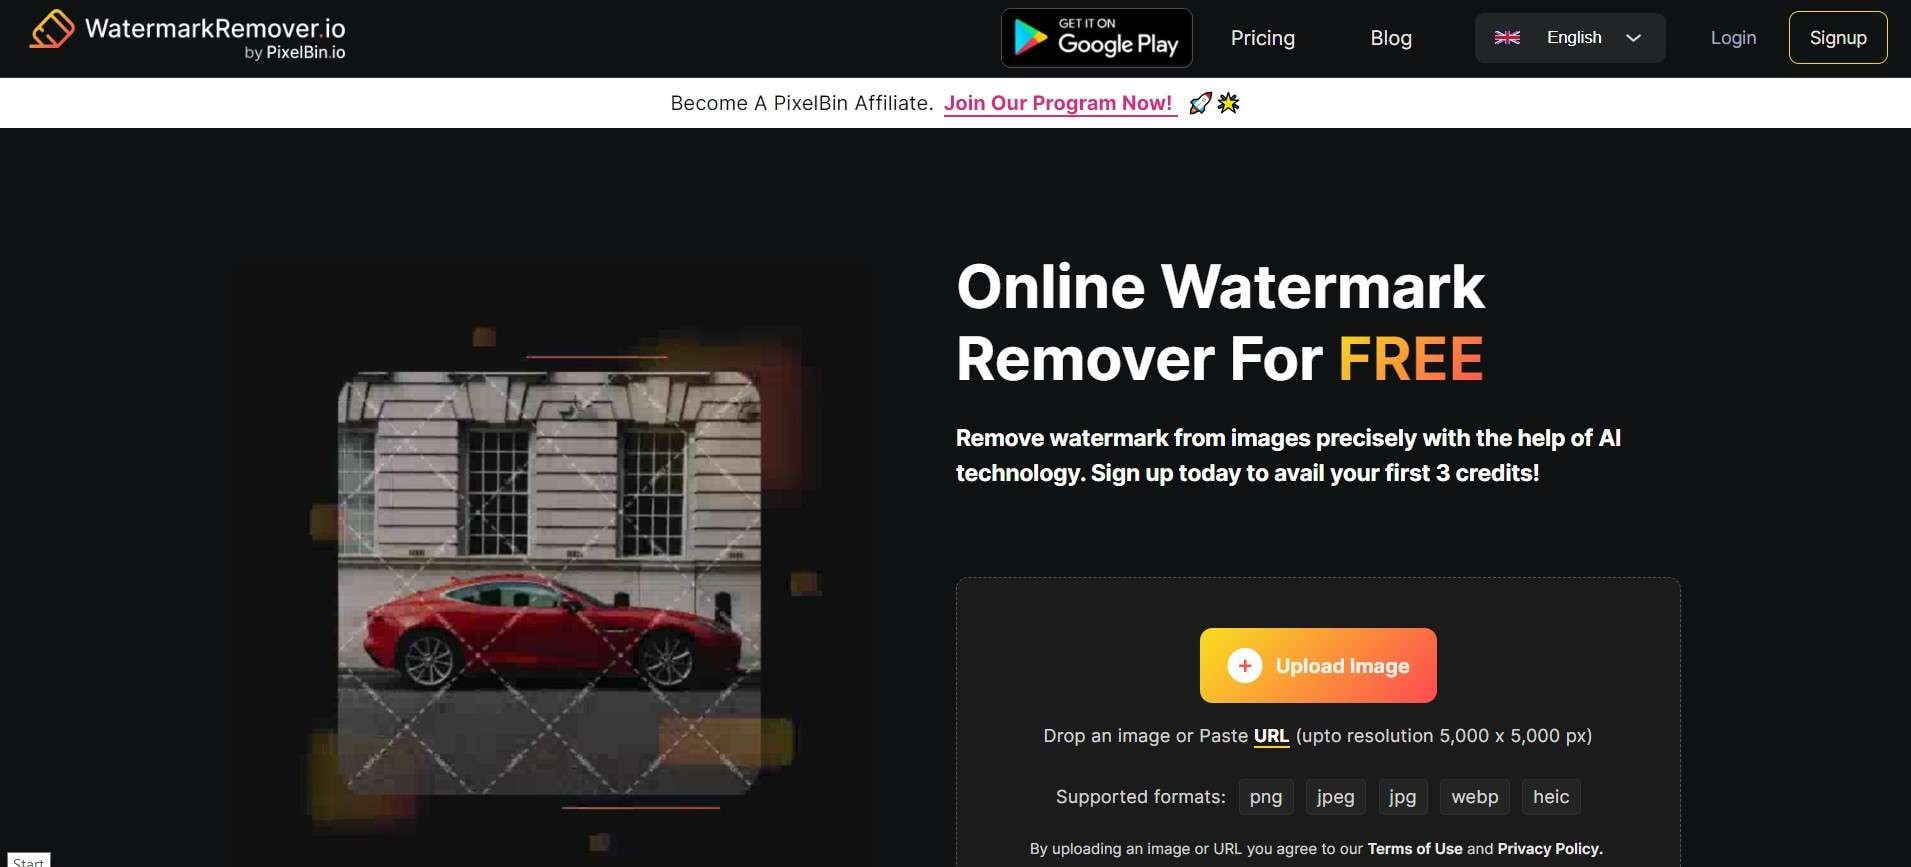 watermark remover io photo logo remover